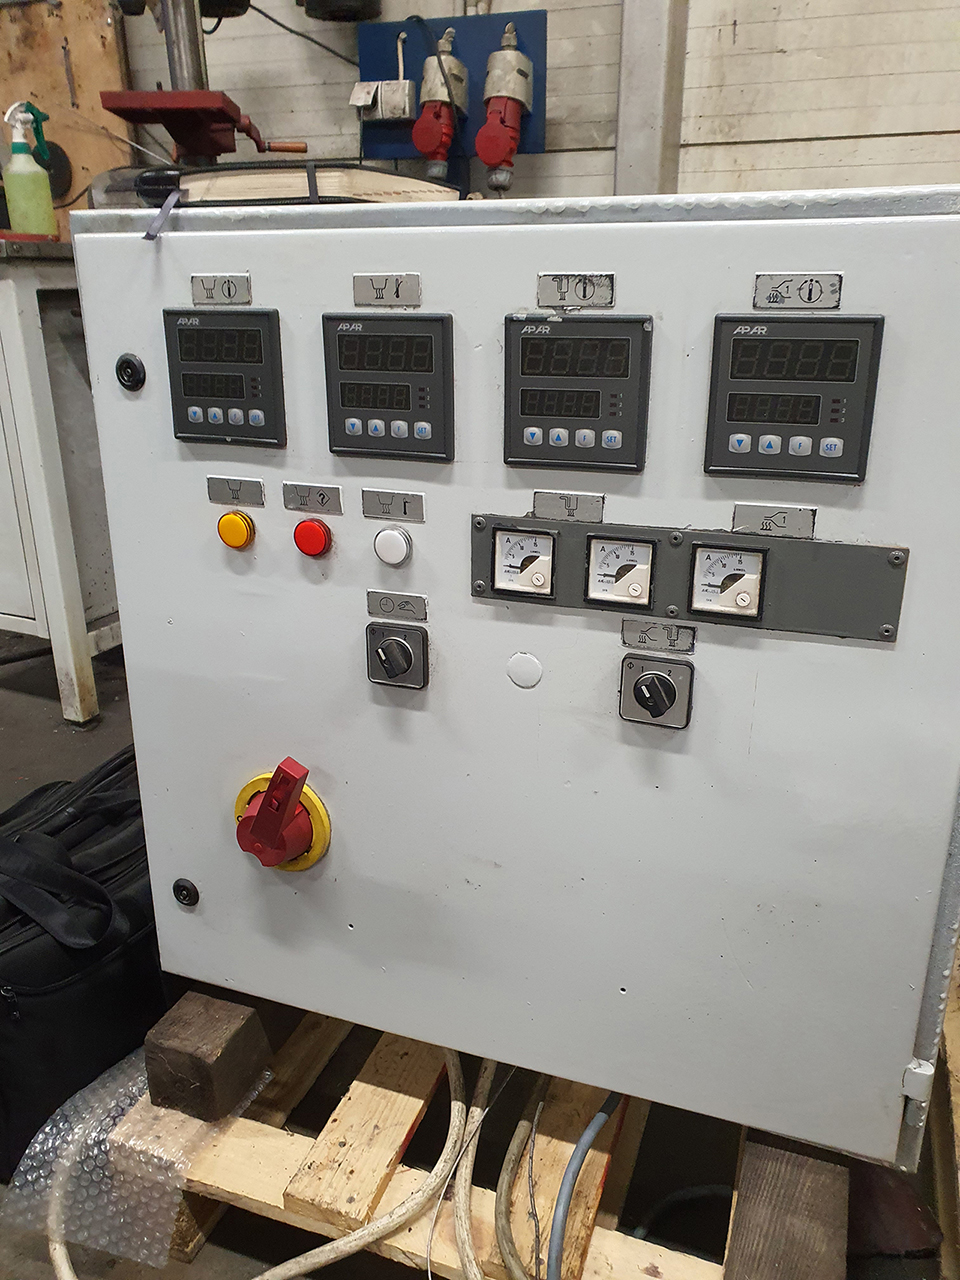 Ricondizionamento della macchina di pressofusione a camera calda Frech DAW 20